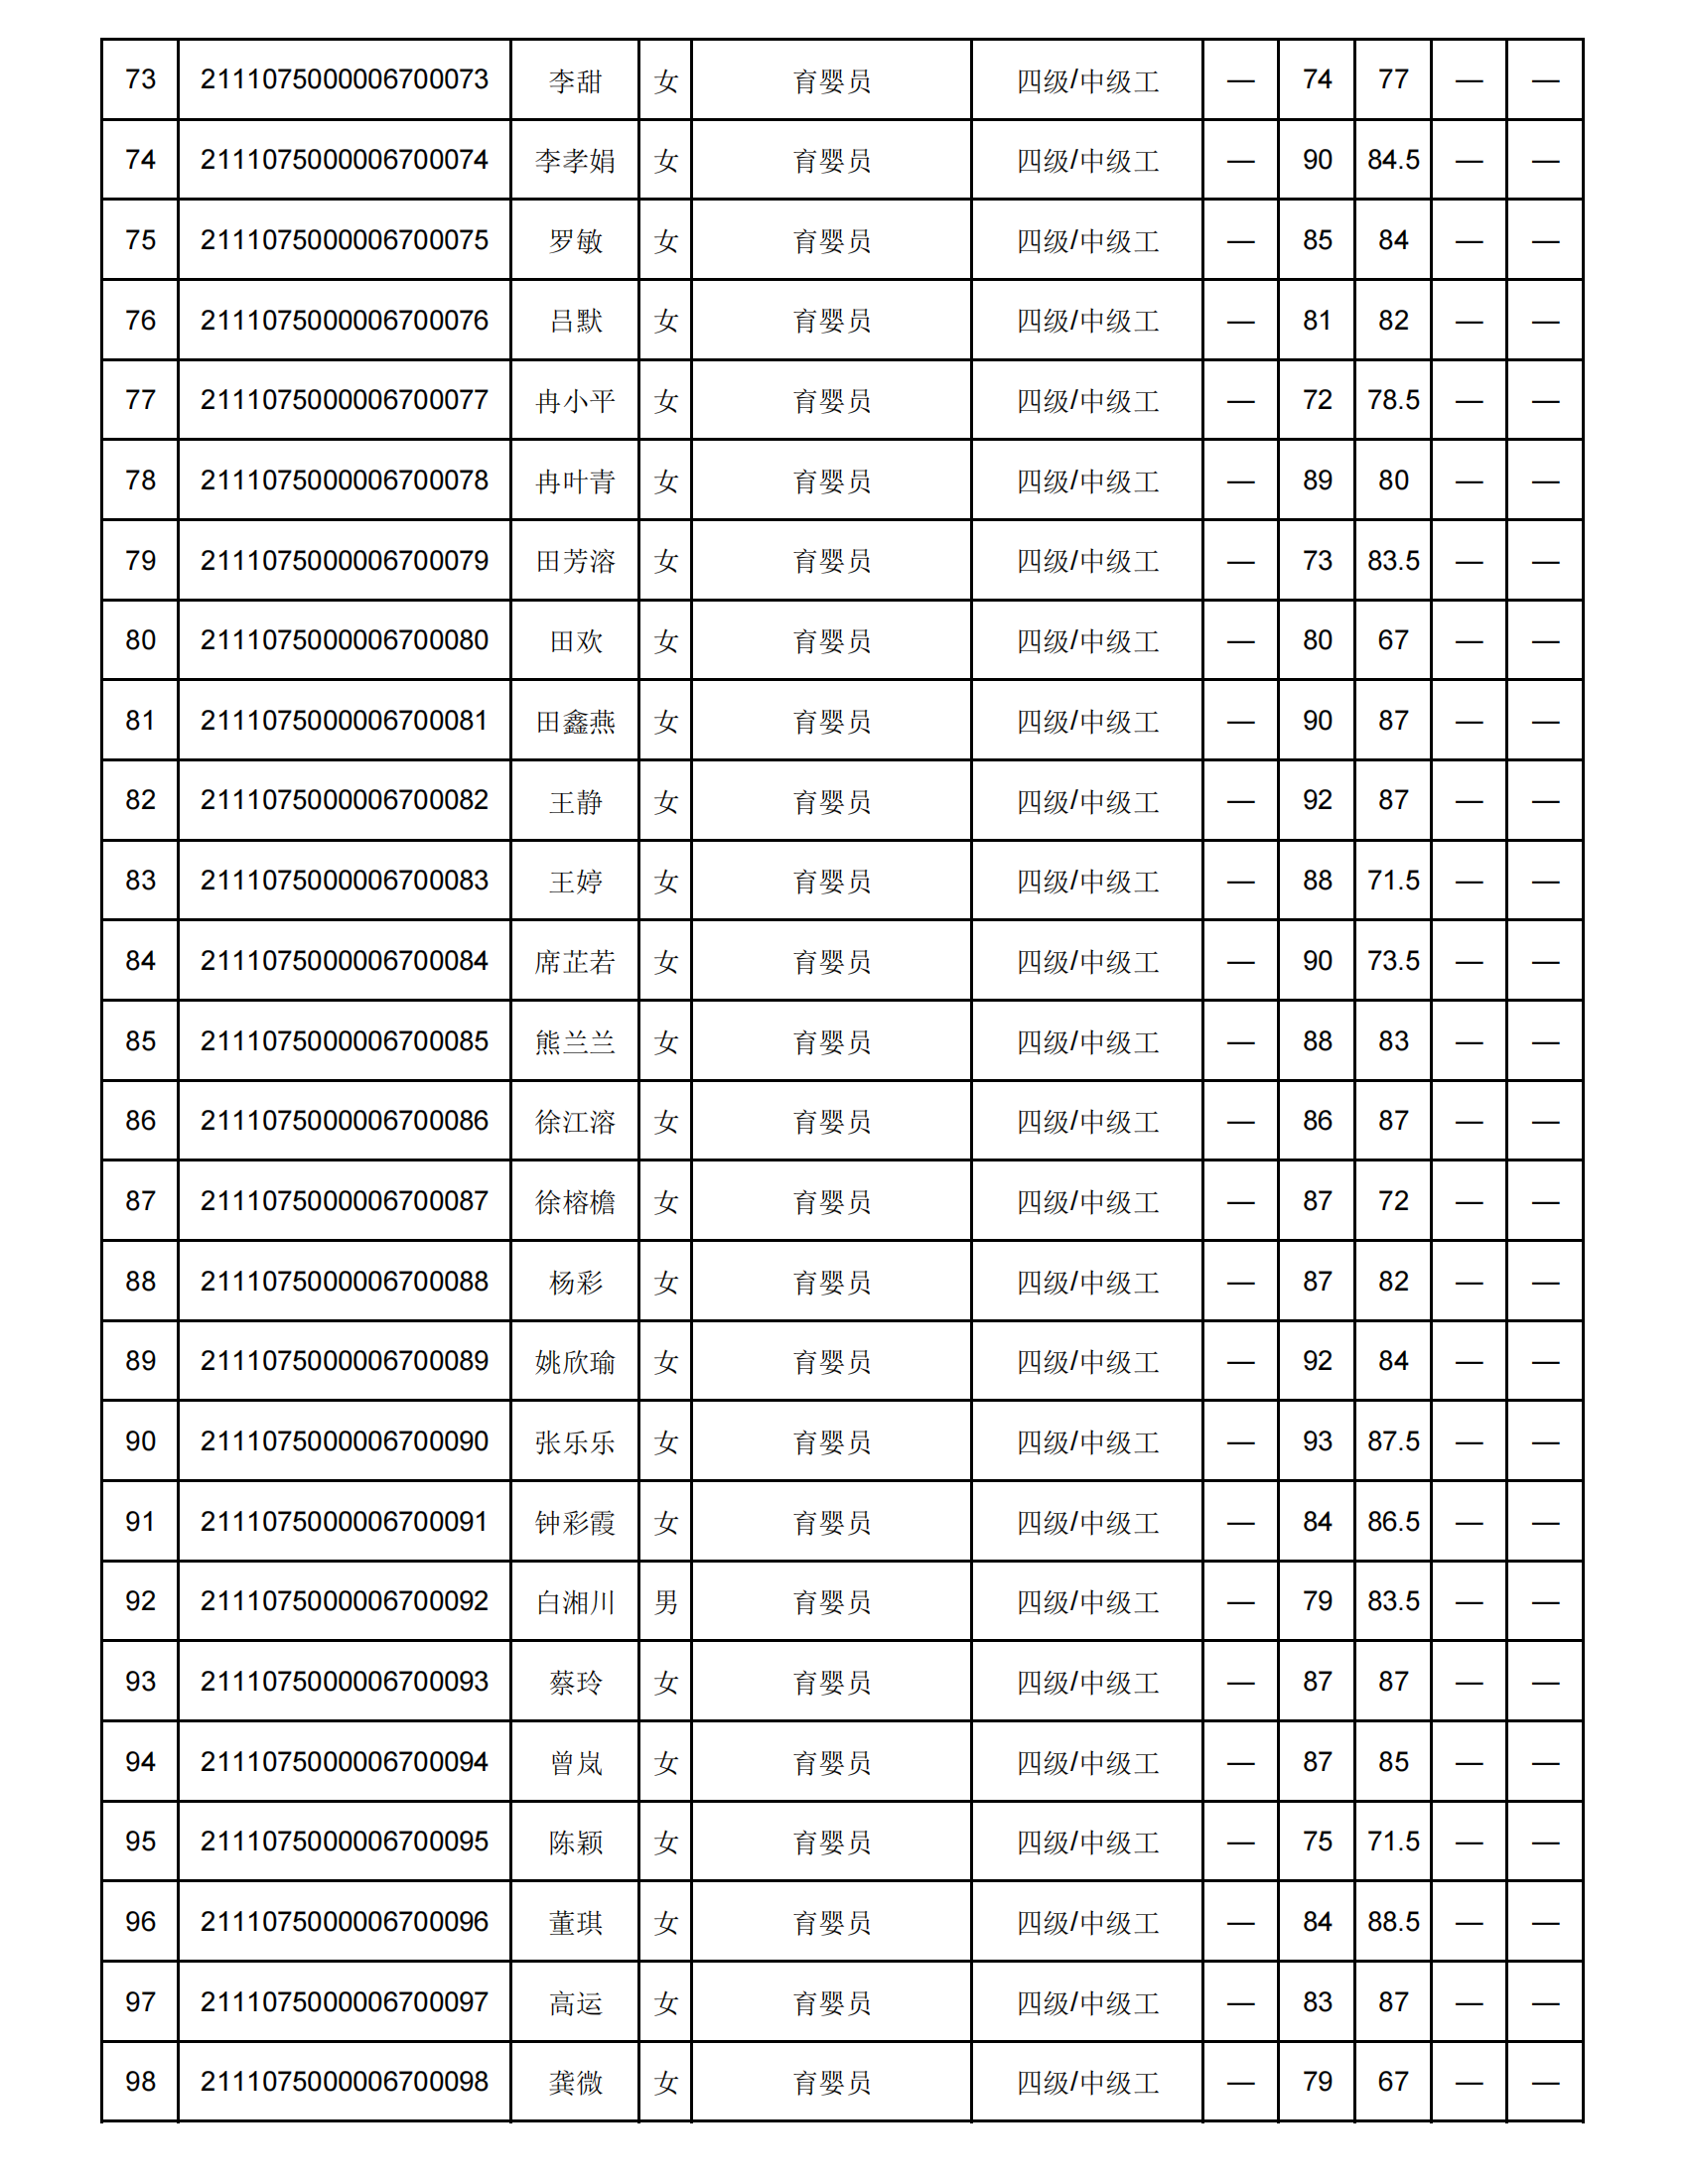 弘一职校第16批职业技能等级认定成绩花名册公示表(1)_03.png